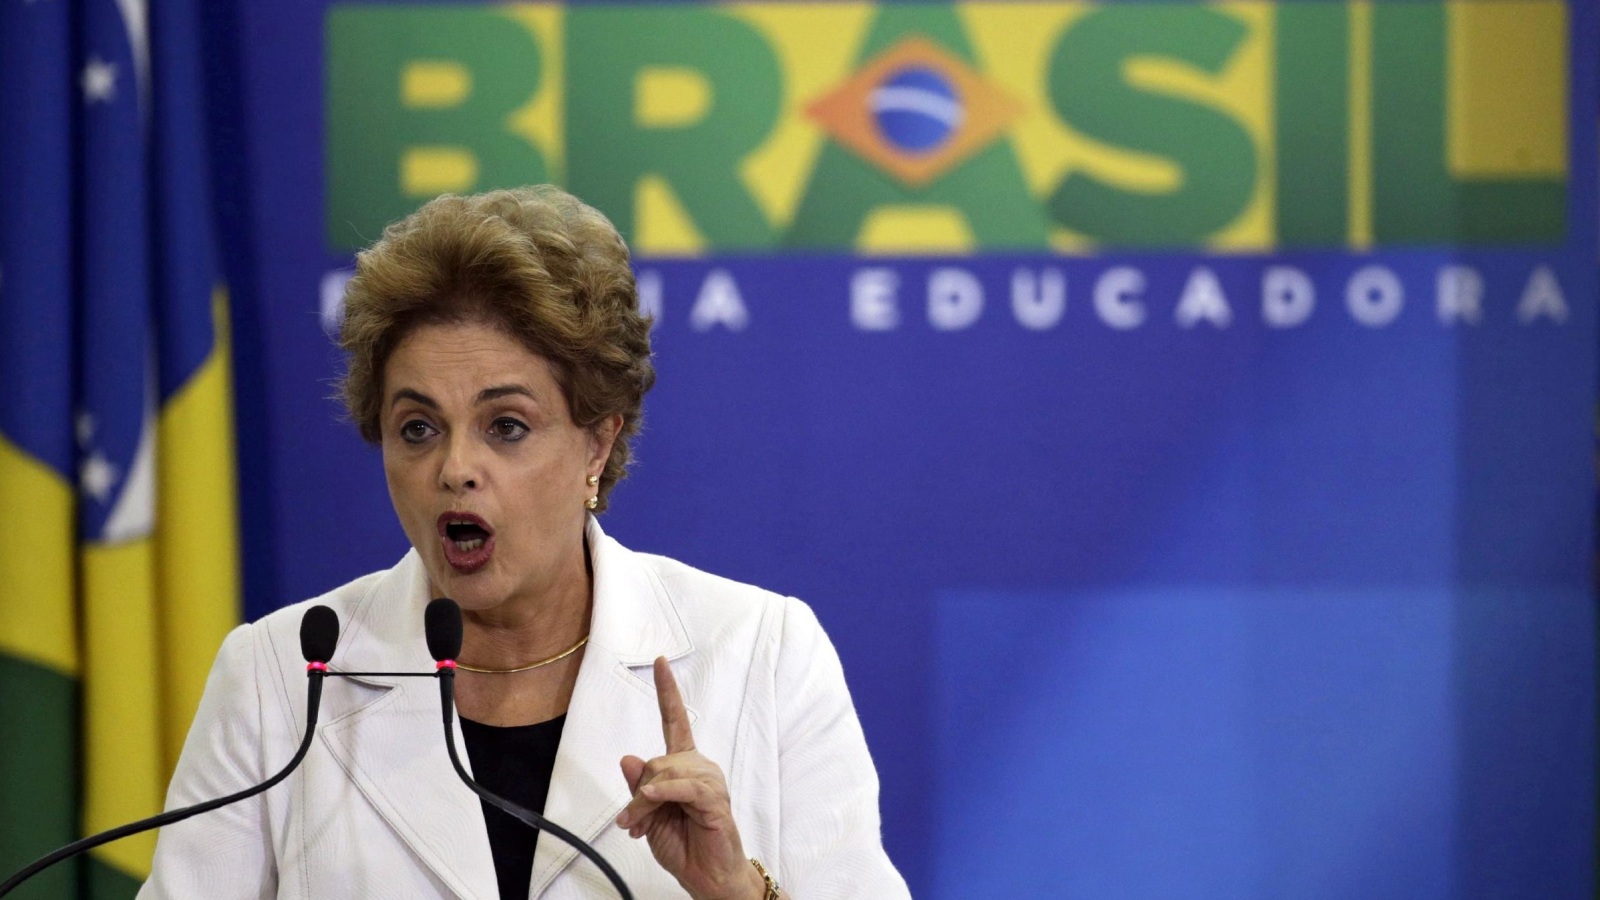  ديلما روسيف تواجه خطر الإقالة في مجلس الشيوخ البررازيلي (الأوروبية)